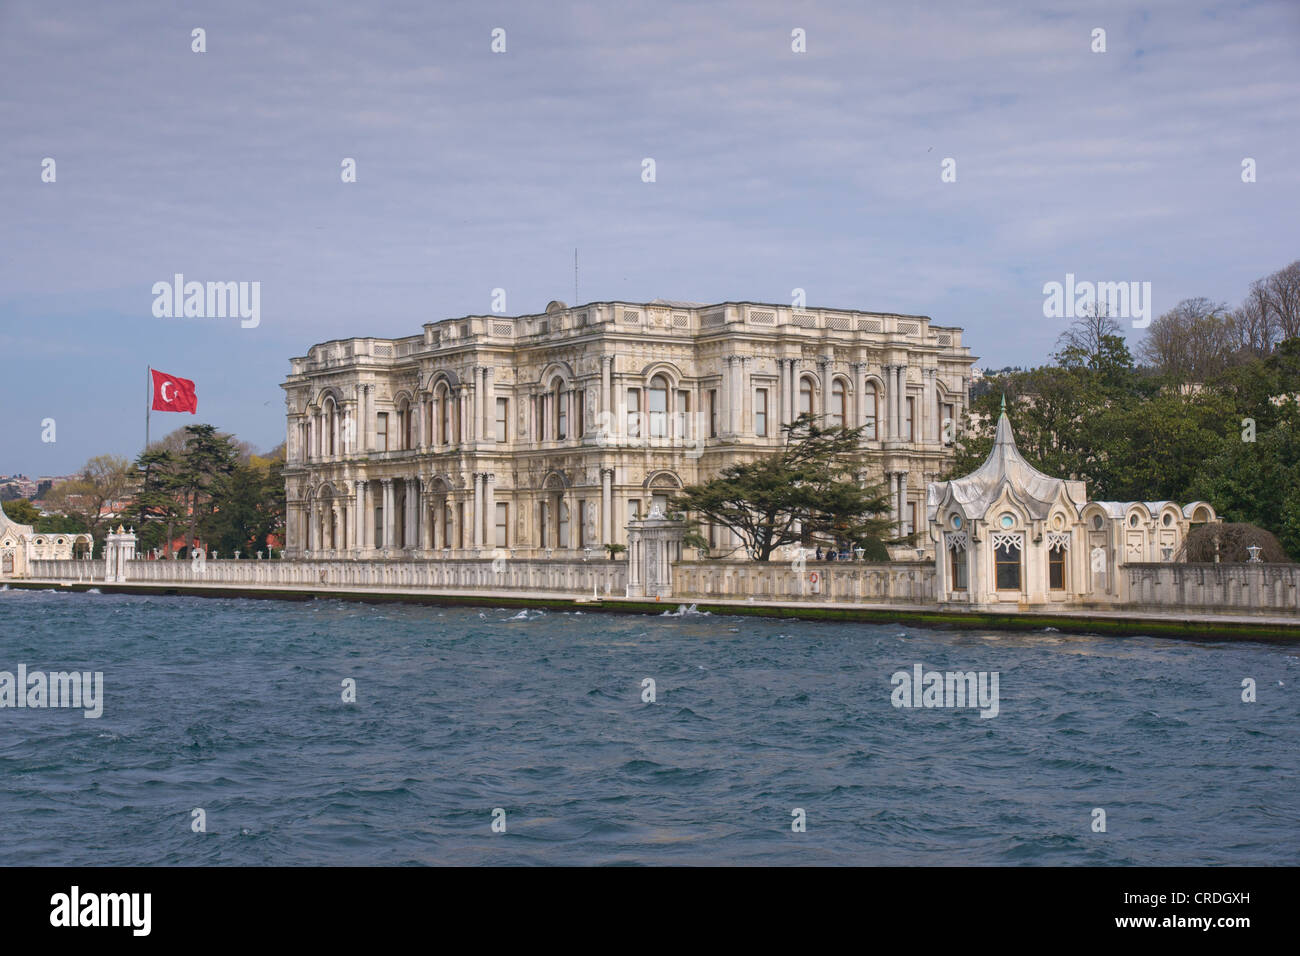 Beylerbeyi-Palast, Beylerbeyi Sarayi, der Sommerpalast des Sultans, asiatischen Ufer des Bosporus, Istanbul, Türkei Stockfoto